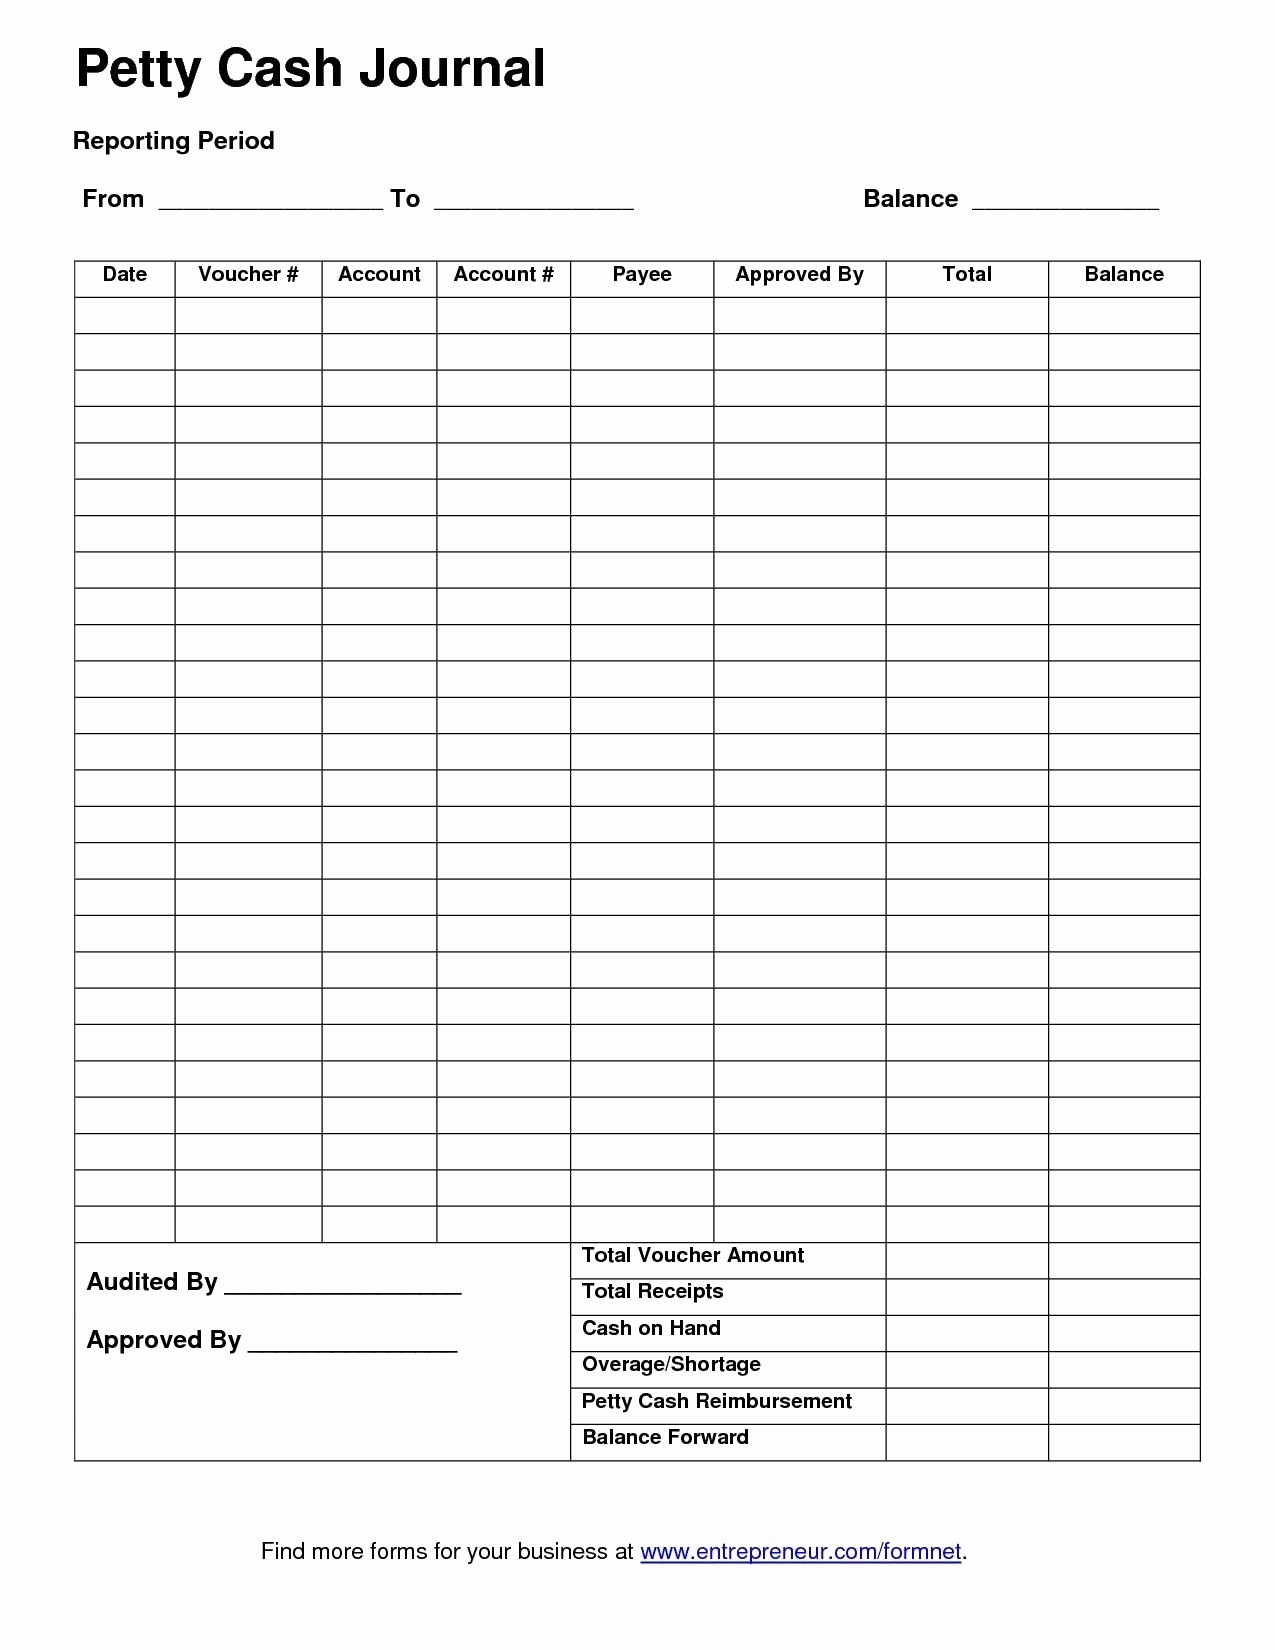 Petty Cash Balance Sheet Template Awesome Template for Petty Cash Petty Cash Report Template Excel